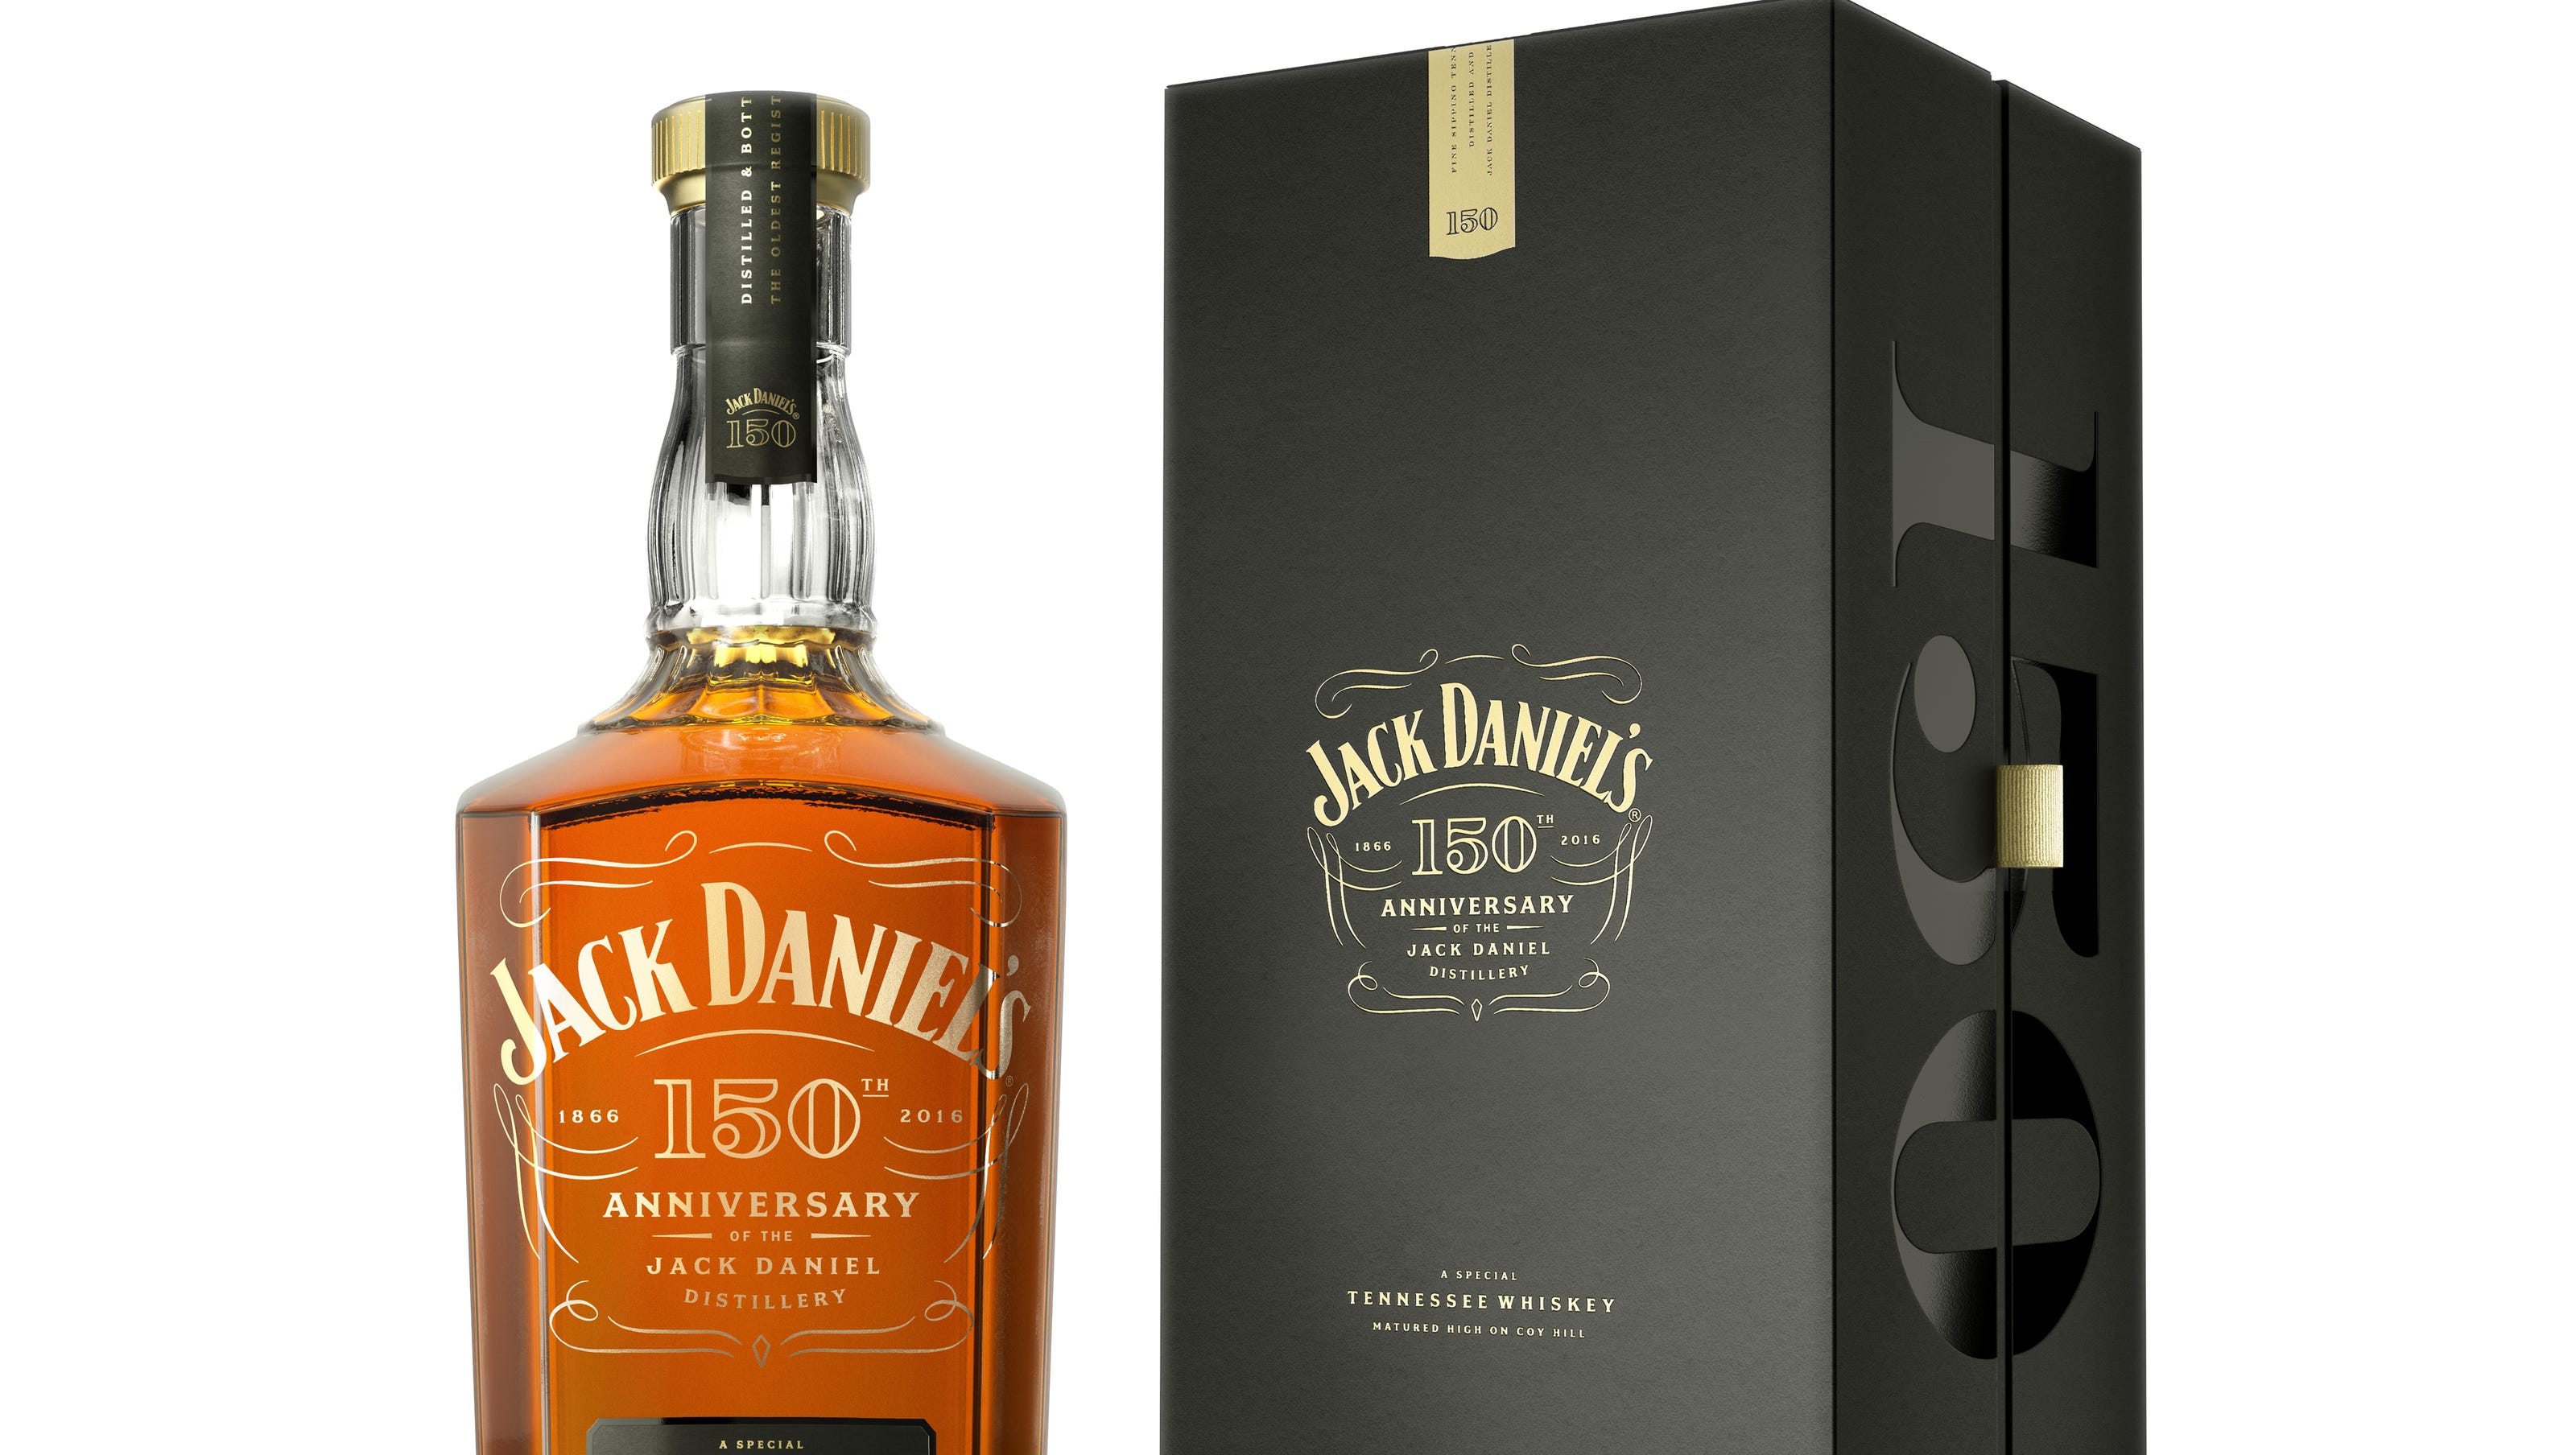 Джек даниэль. Jack Daniel’s 150th Anniversary, 50%. Виски Джек Дэниэлс Блэк. Виски Джек Уокер Дэниэлс. Виски Джек Дэниэлс Теннесси завод.